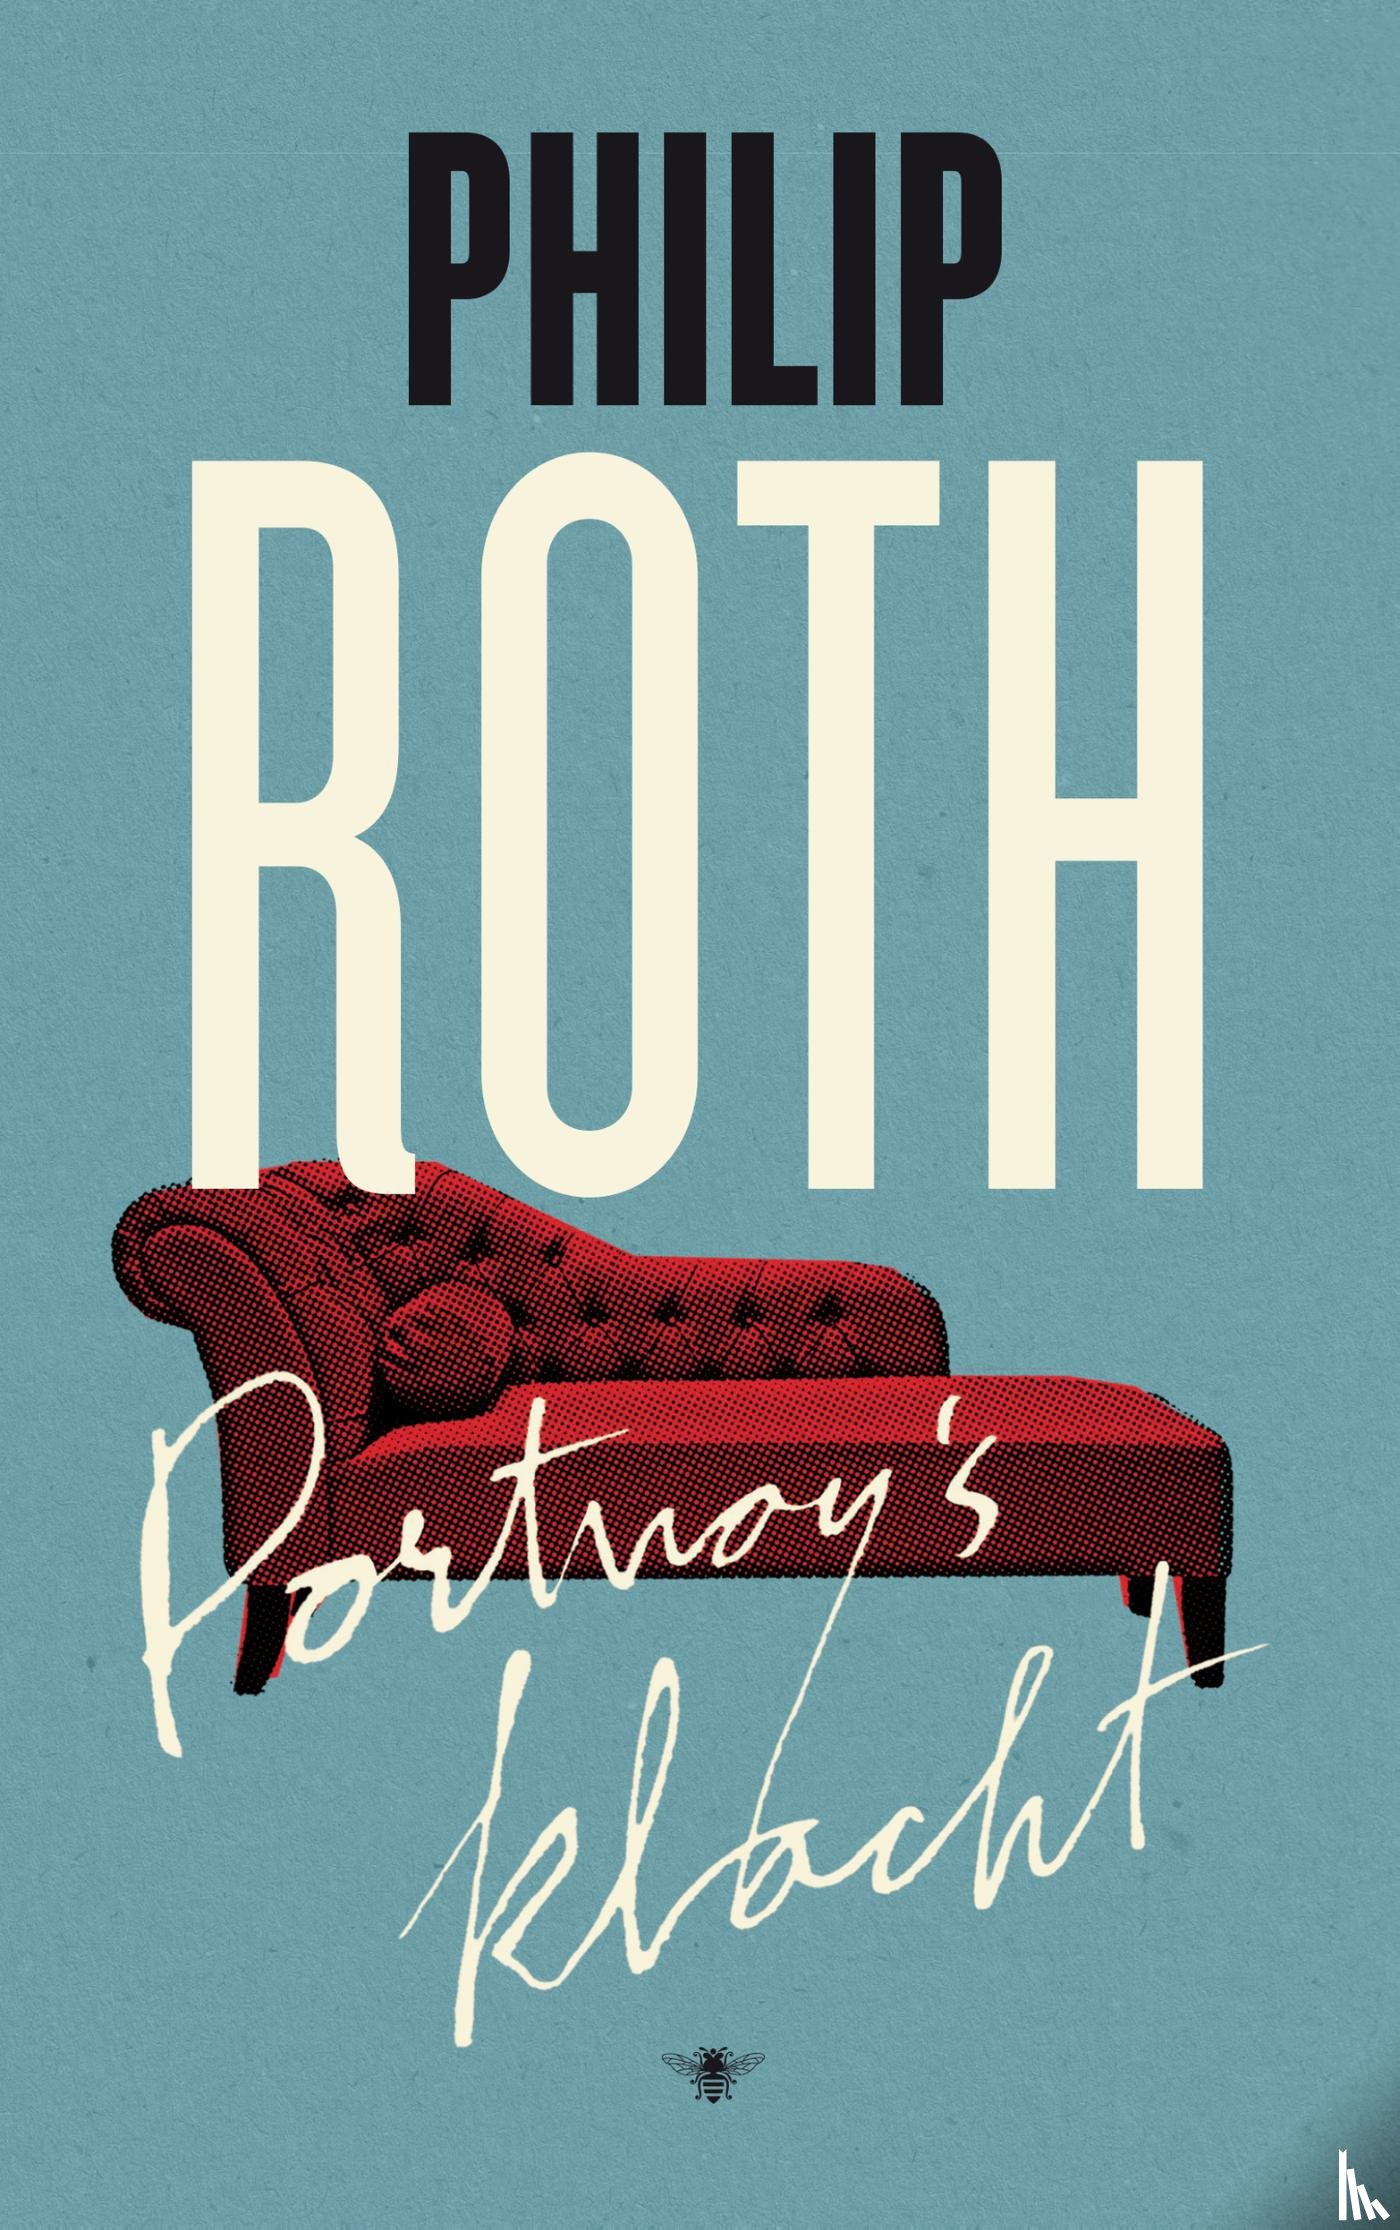 Roth, Philip - Portnoy's klacht